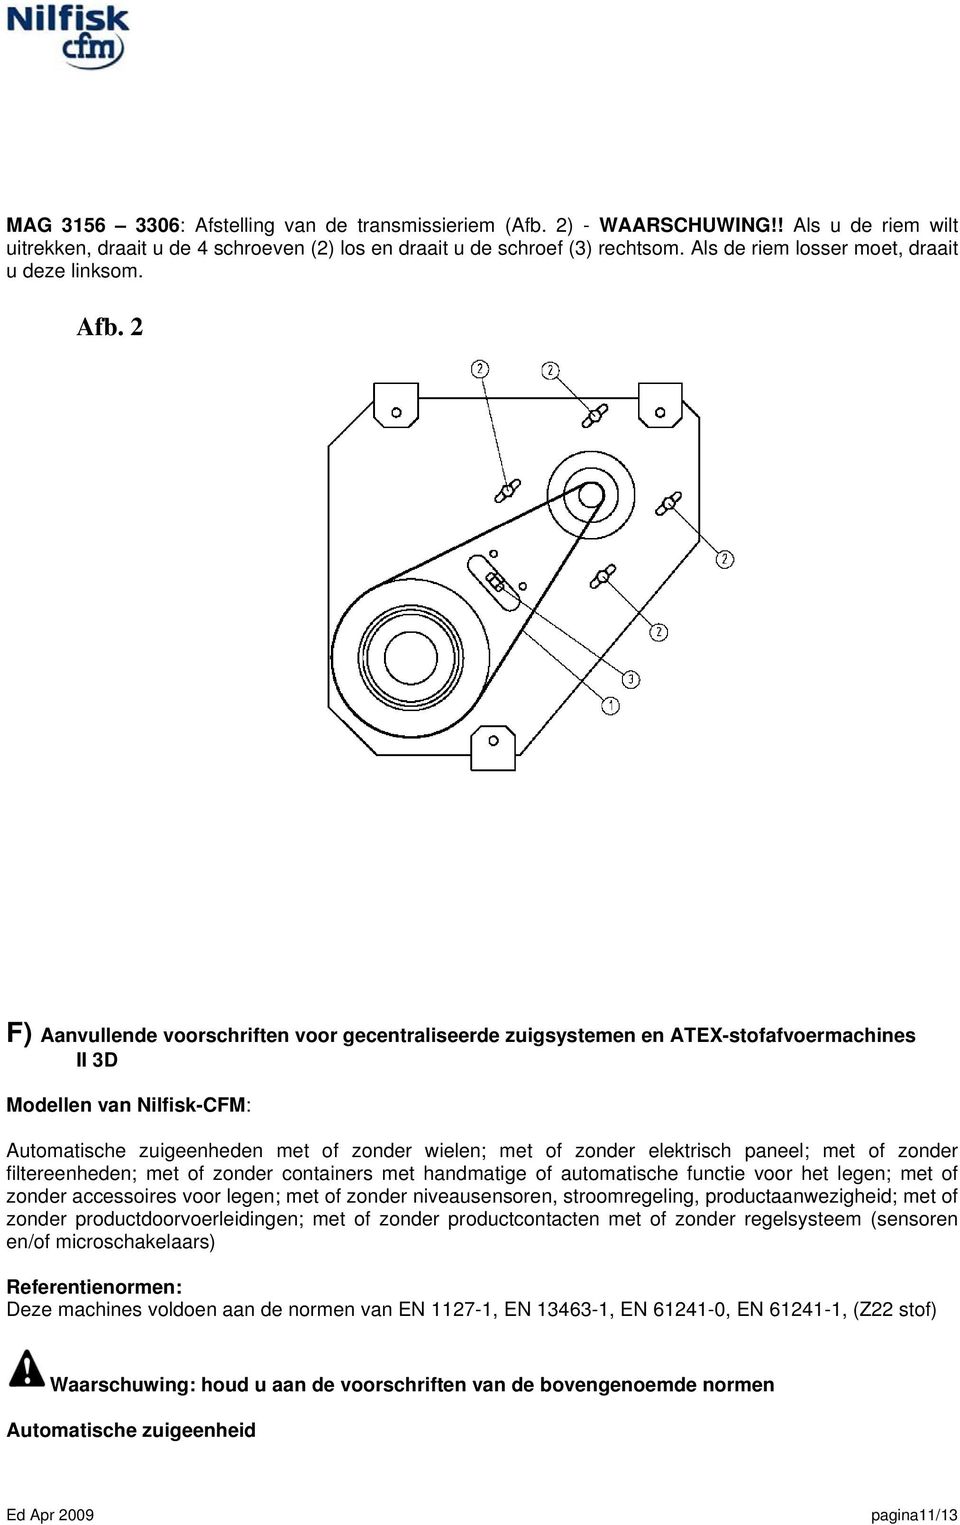 2 F) Aanvullende voorschriften voor gecentraliseerde zuigsystemen en ATEX-stofafvoermachines II 3D Modellen van Nilfisk-CFM: Automatische zuigeenheden met of zonder wielen; met of zonder elektrisch